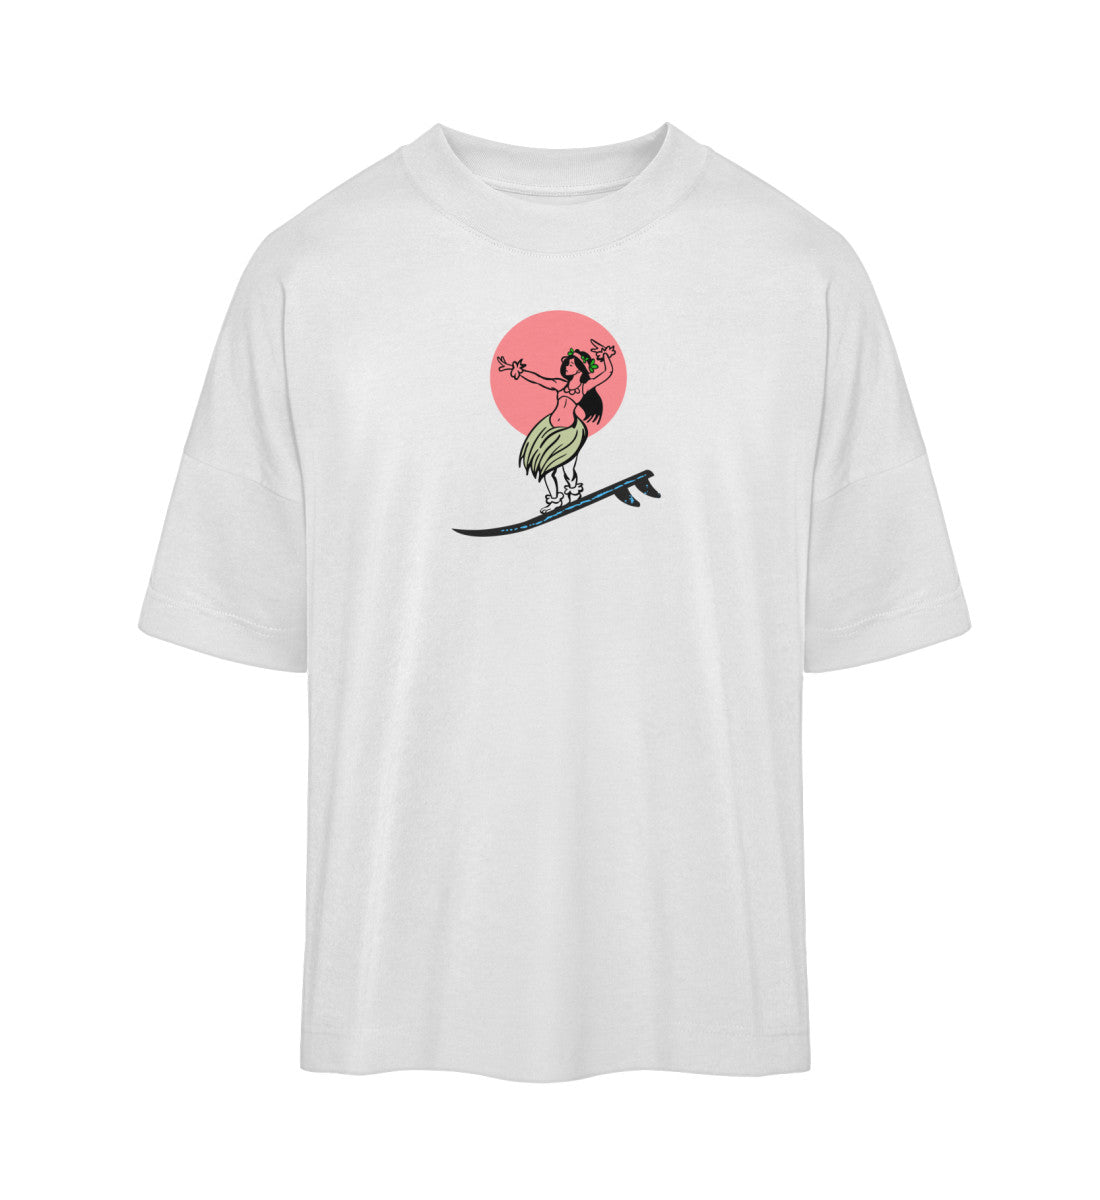 Weißes T-Shirt Unisex Oversize Fit für Frauen und Männer bedruckt mit dem Design der Roger Rockawoo Kollektion Surf where wet dreams become true